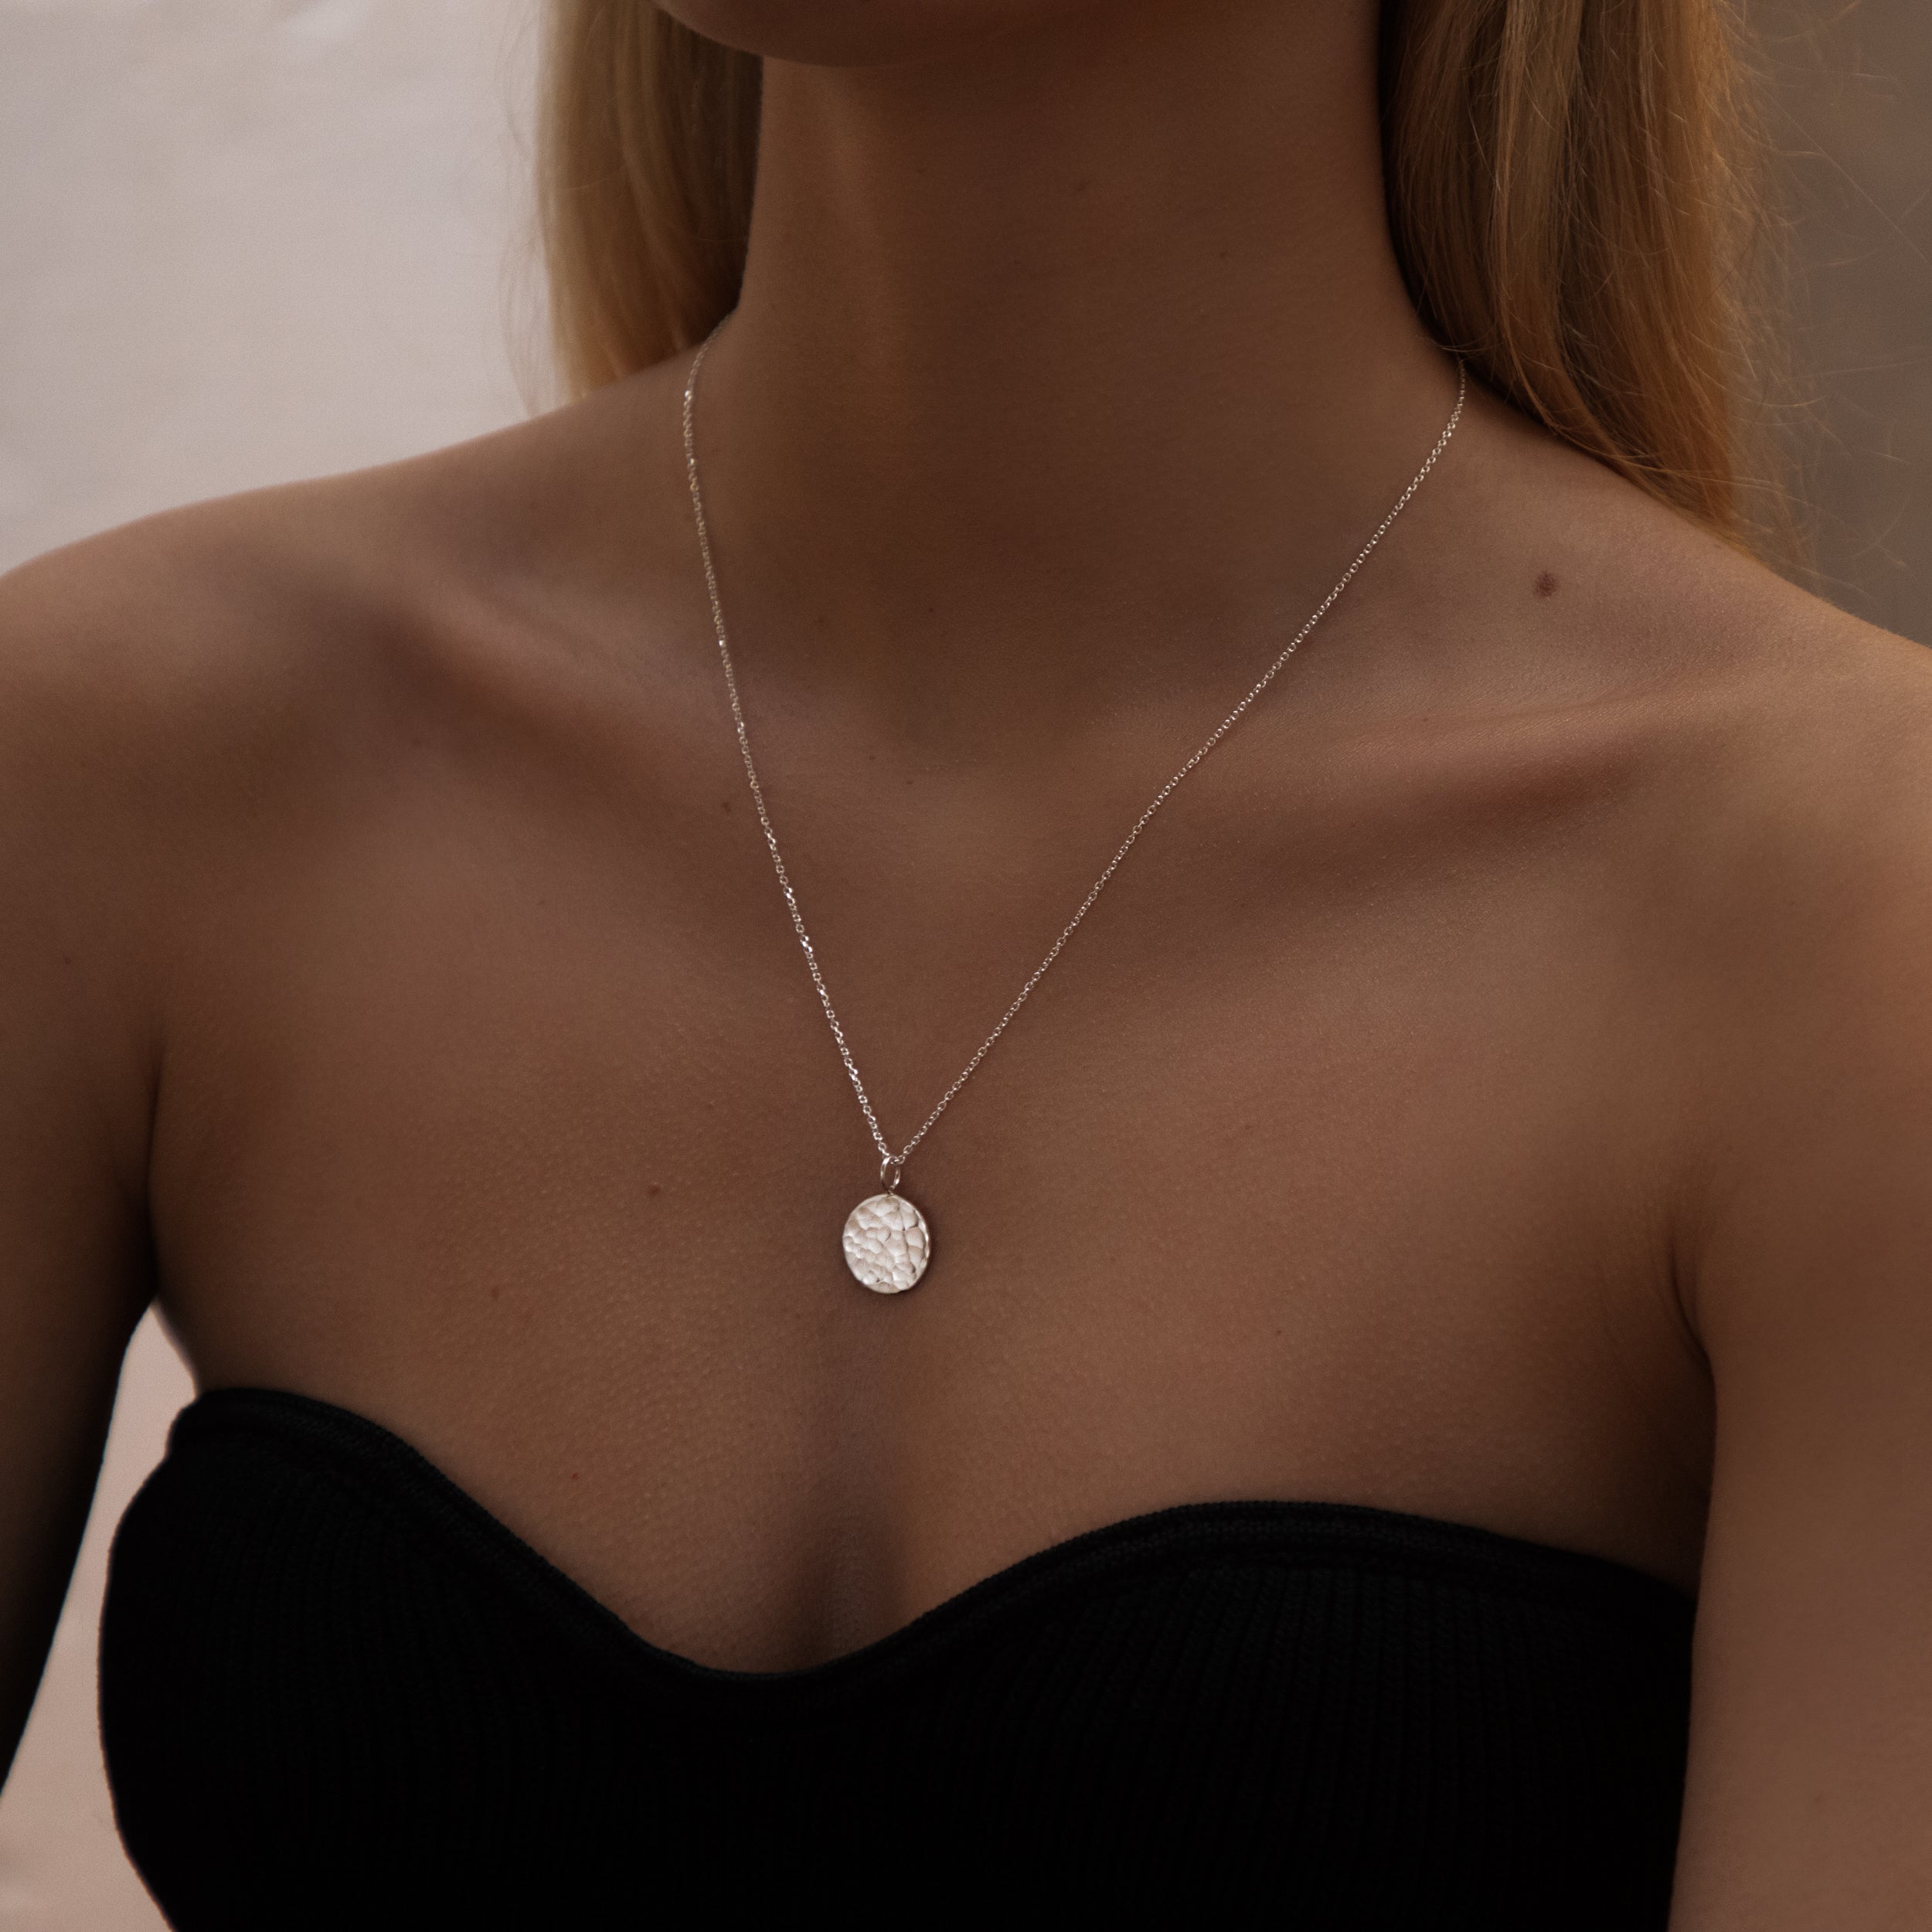 gabriella necklace, dainty silver necklace, little silver necklace, birthday present necklace